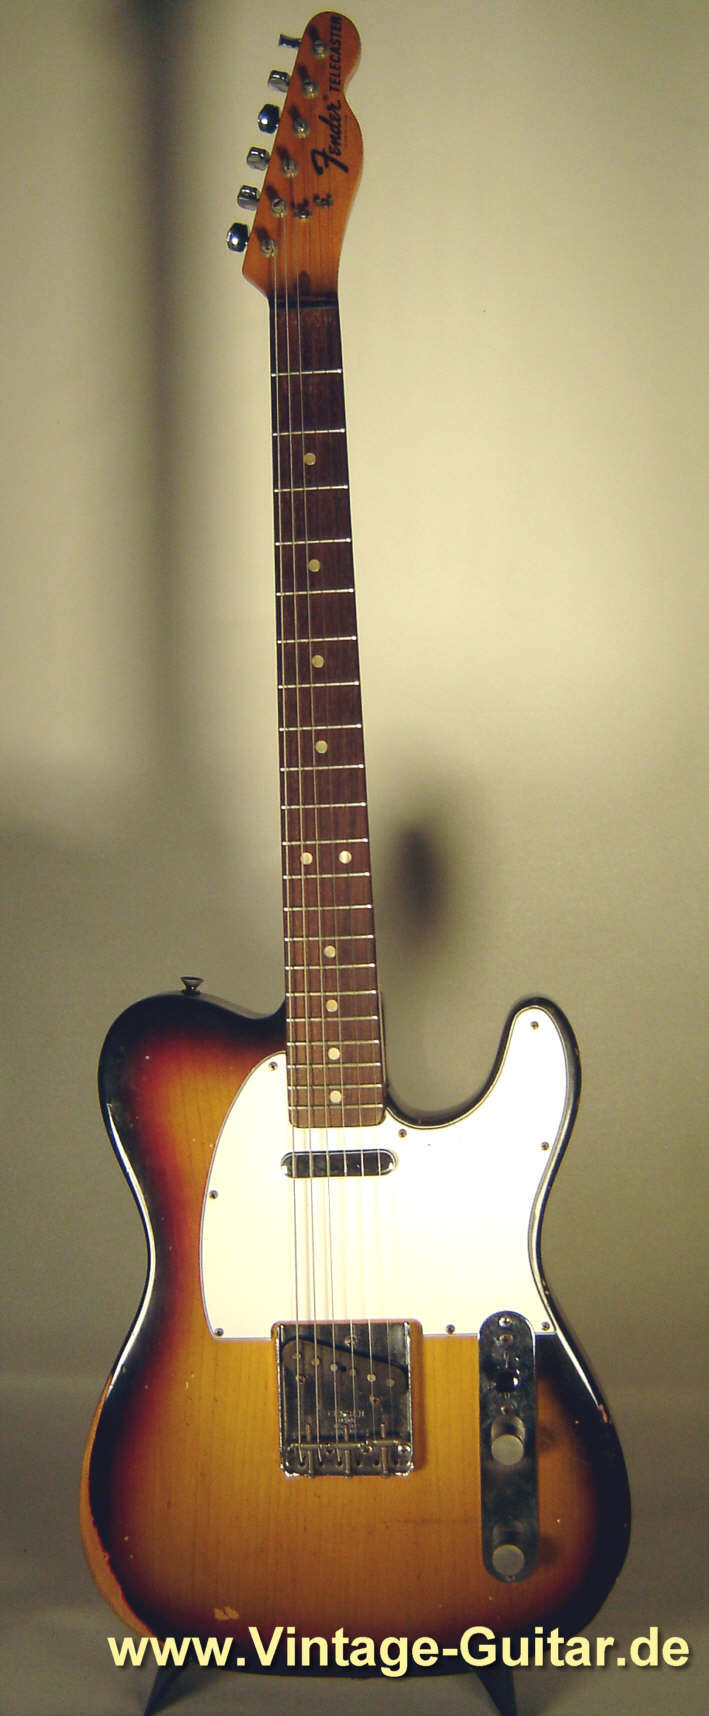 Fender_Telecaster_1973_sunburst_1.jpg